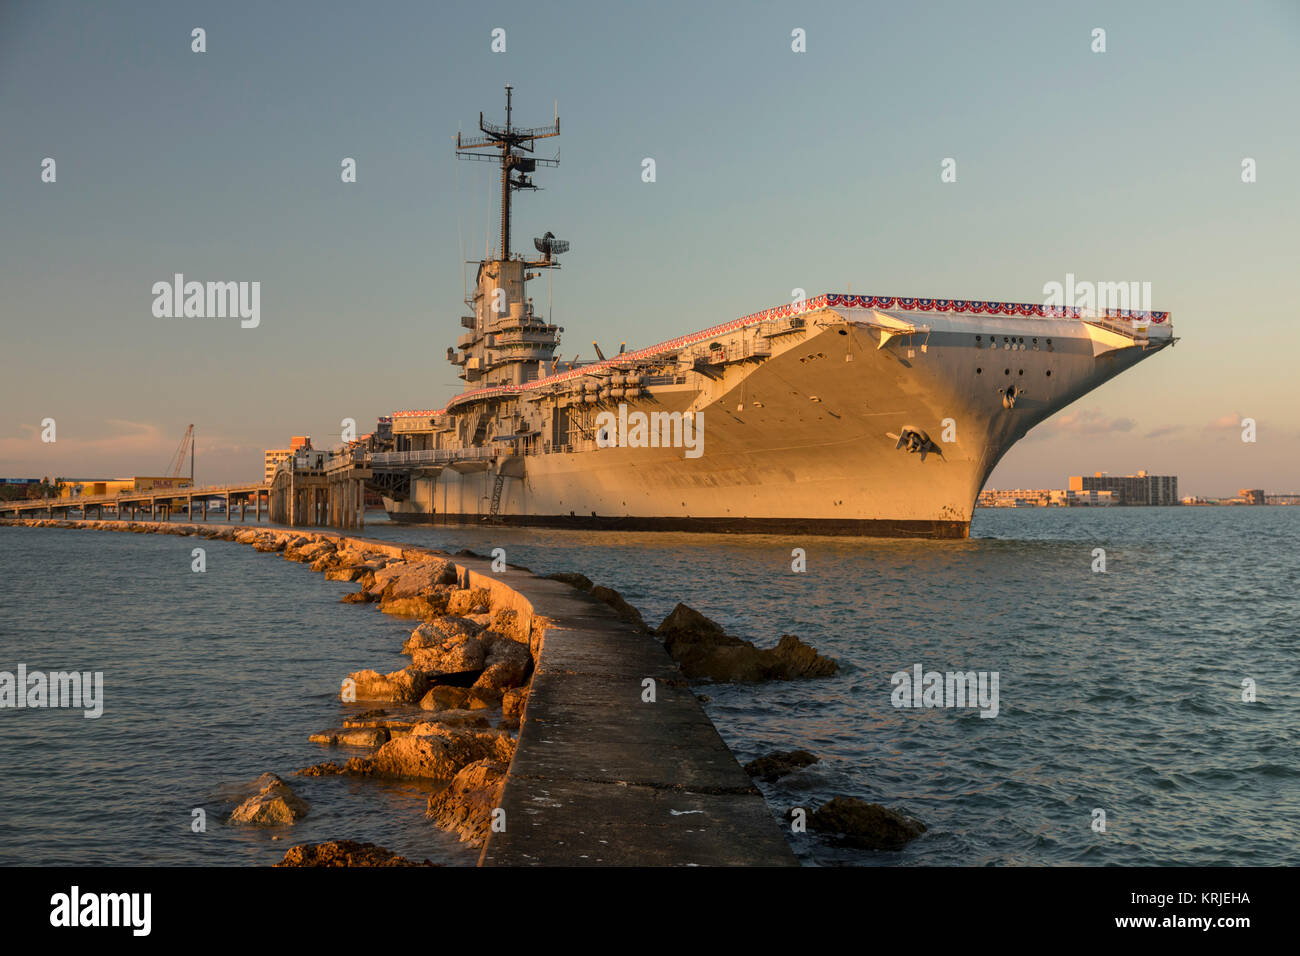 Corpus Christi, Texas - l'USS Lexington, un porte-avions de la Seconde  Guerre mondiale, qui est maintenant un musée naval Photo Stock - Alamy